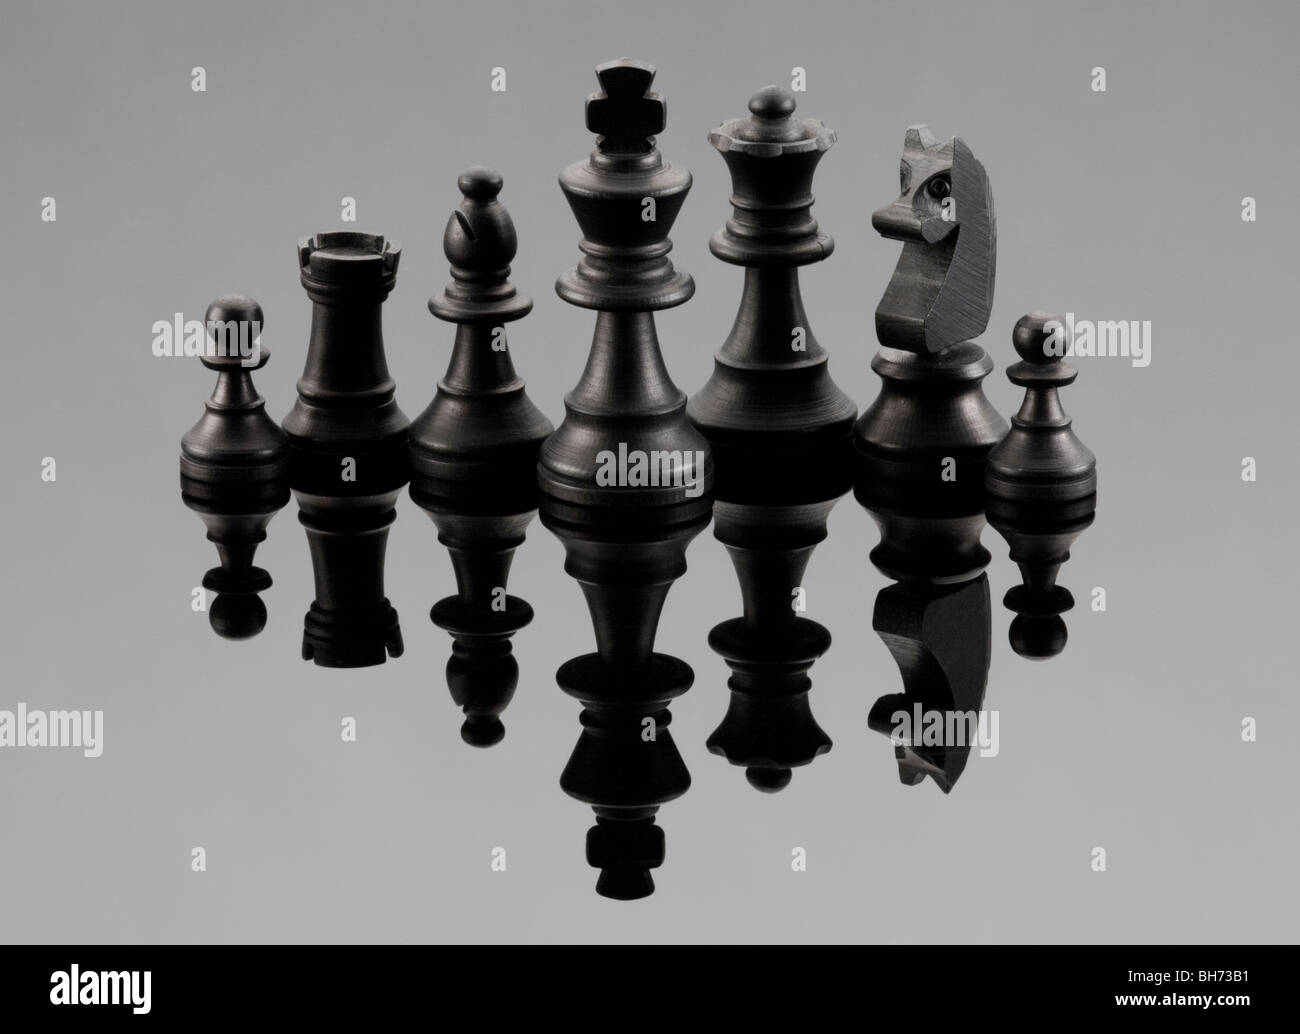 Quelques pièces d'échecs noir typique d'un jeu d'échecs Banque D'Images